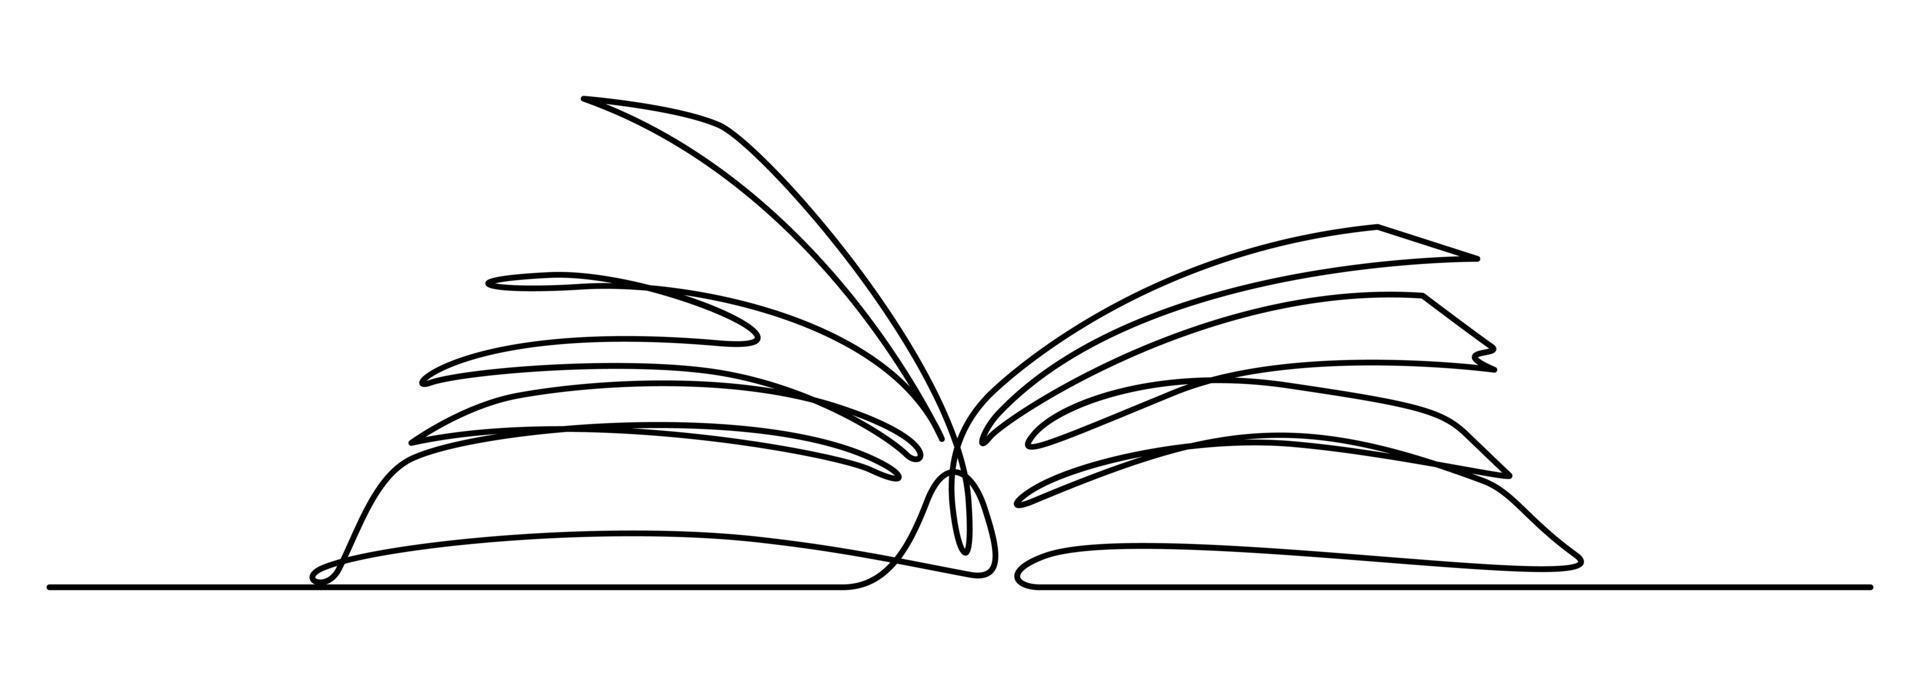 öppen bok en rad ritning illustration vektor